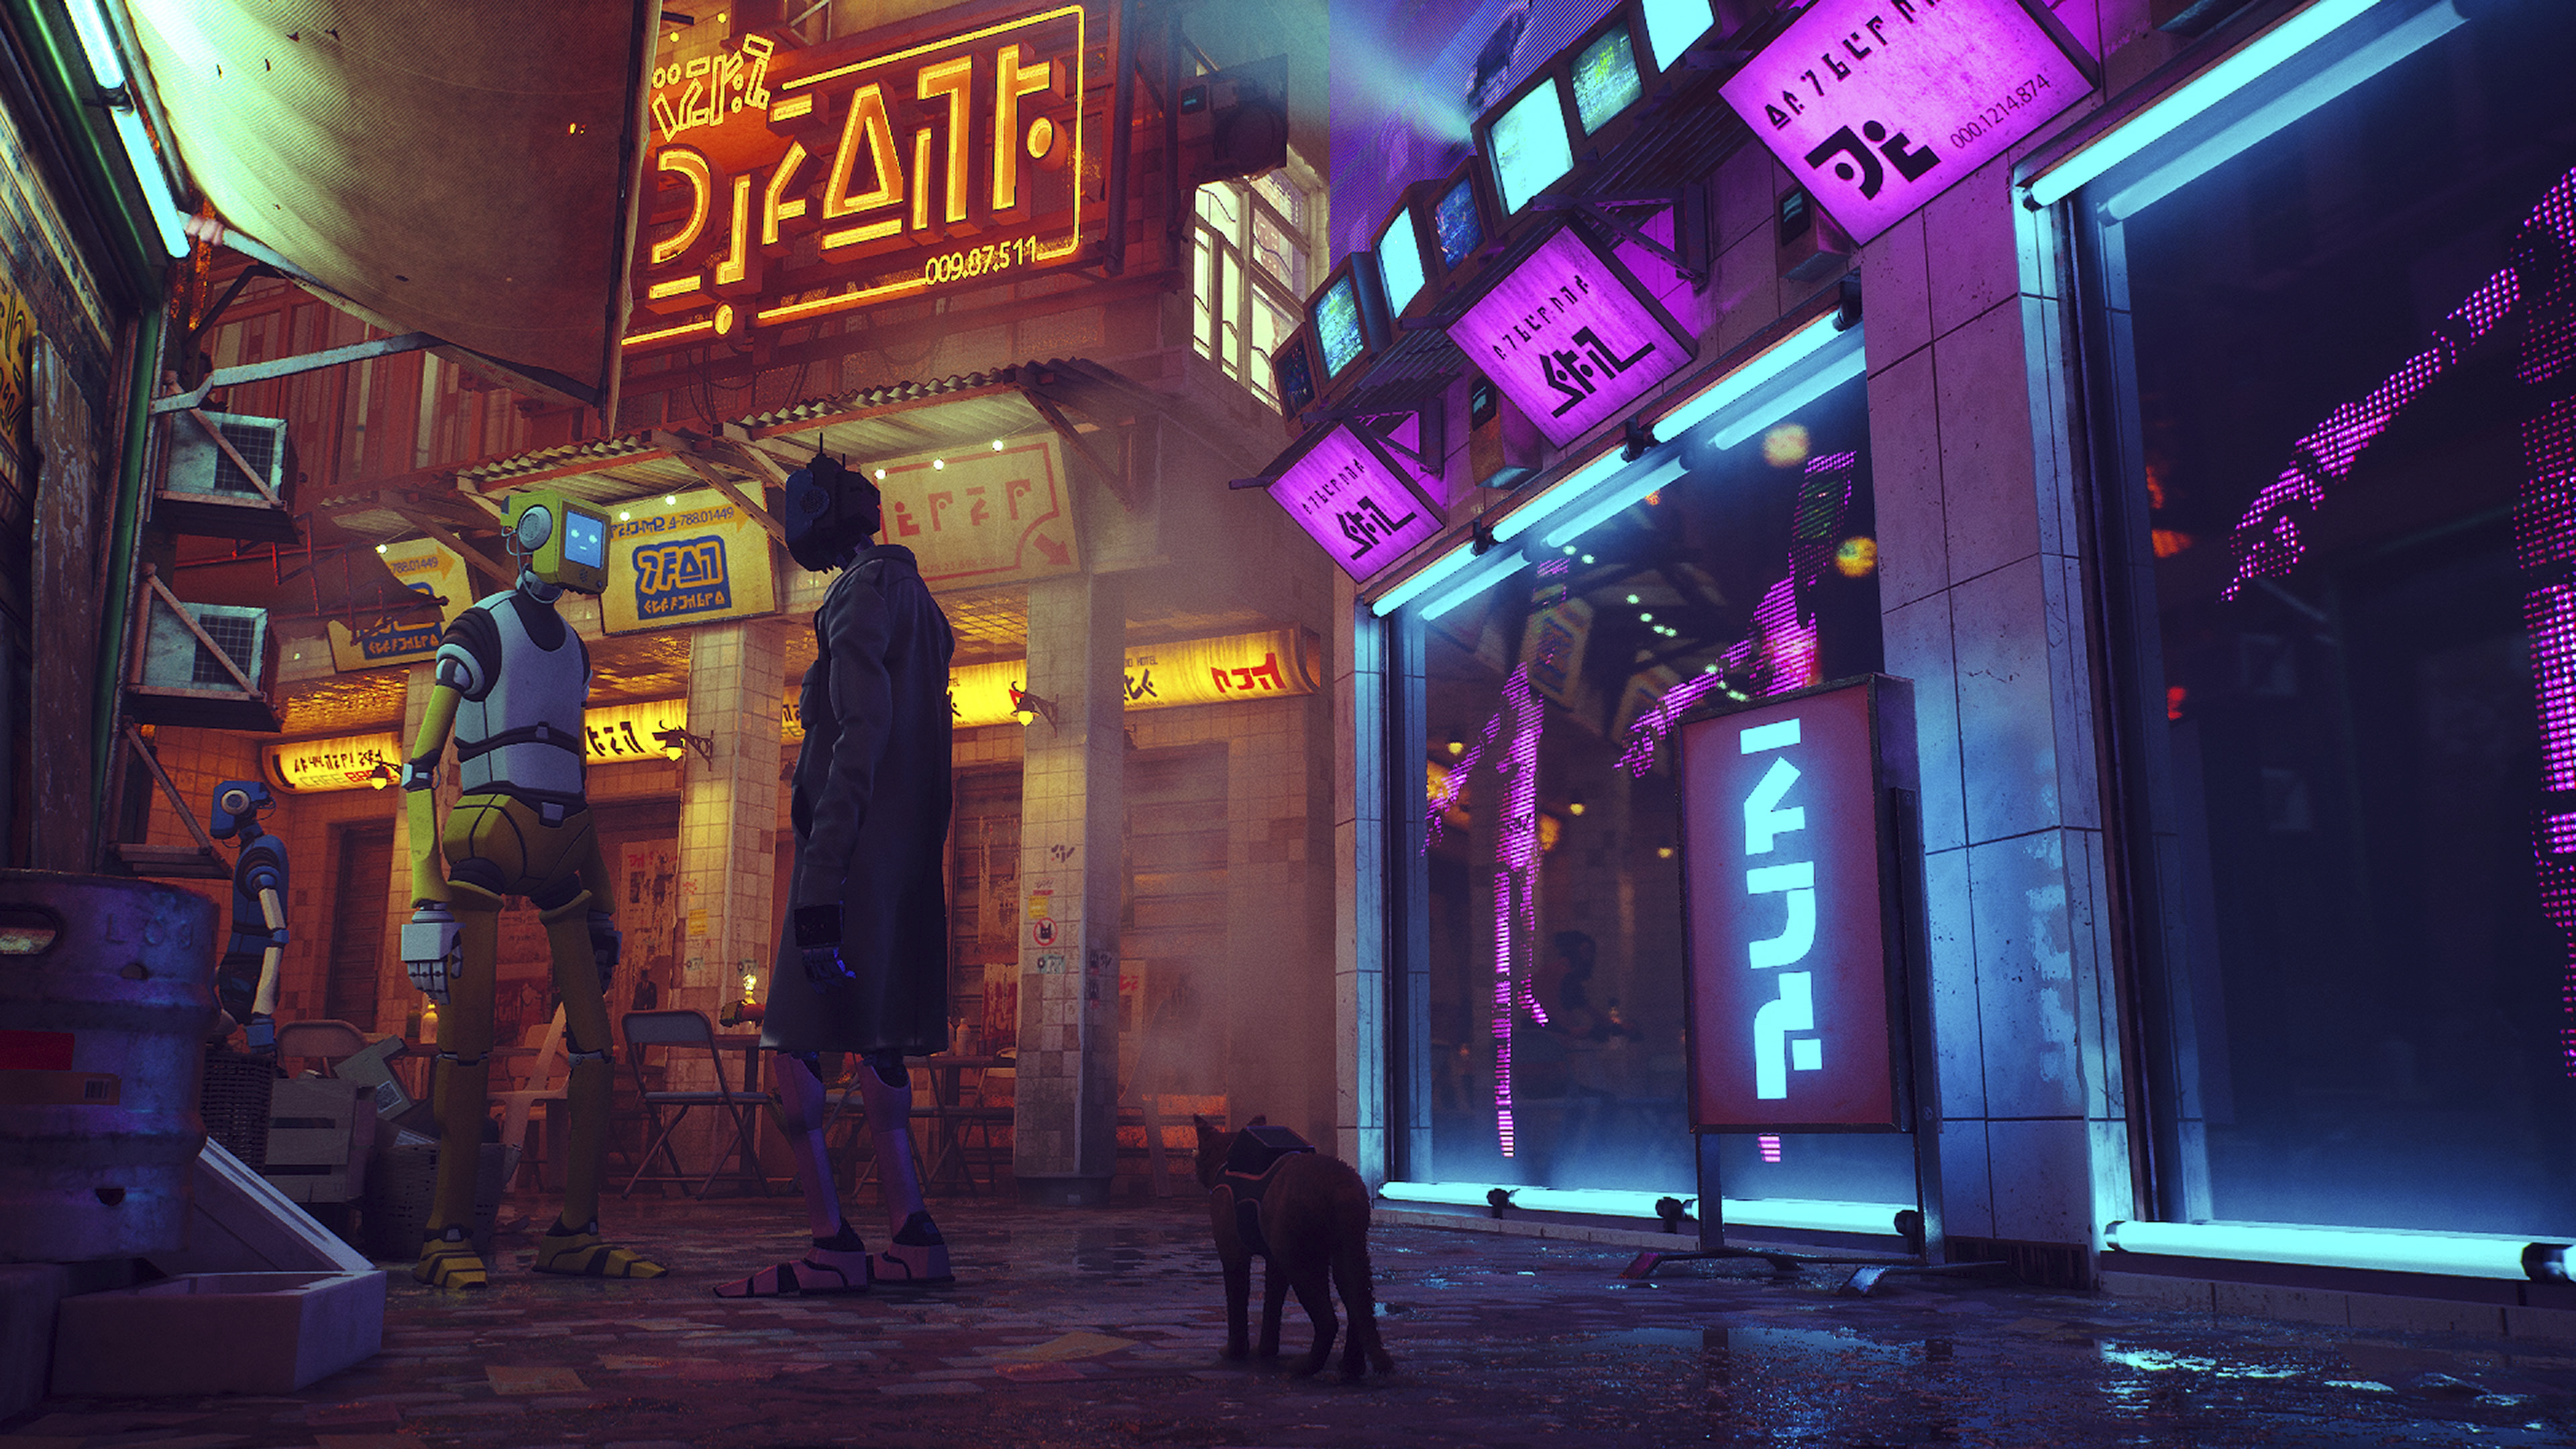 Snimka zaslona iz igre Stray koja prikazuje ulicu osvijetljenu neonskim svjetlima.